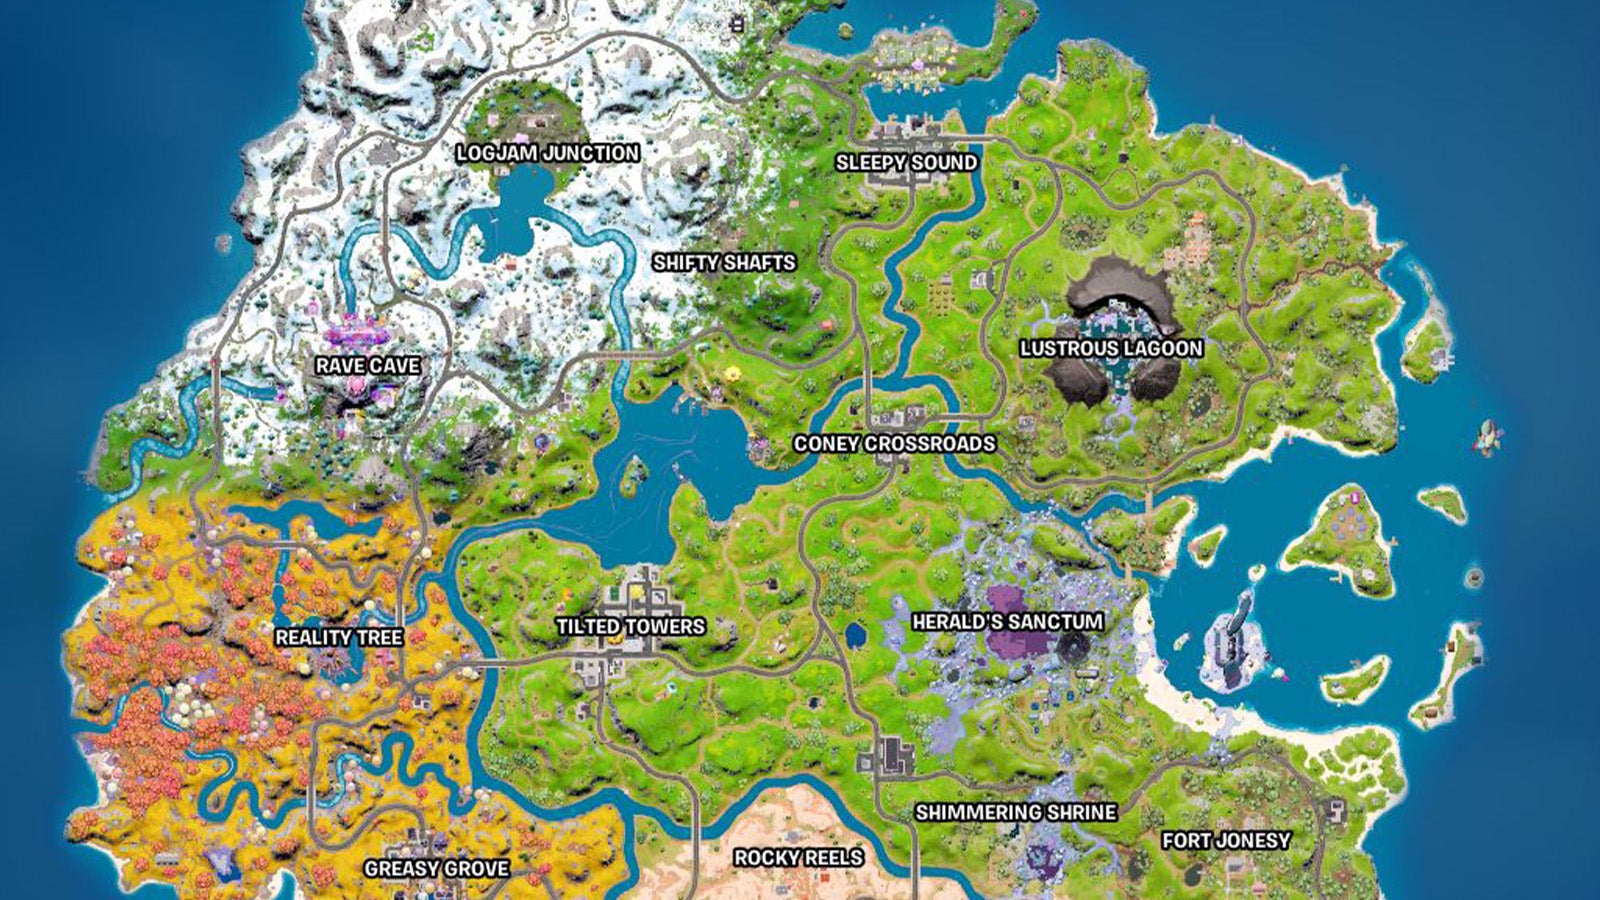 Fortnite New Map Landmarks And Named Locations Explained Eurogamer Net ...